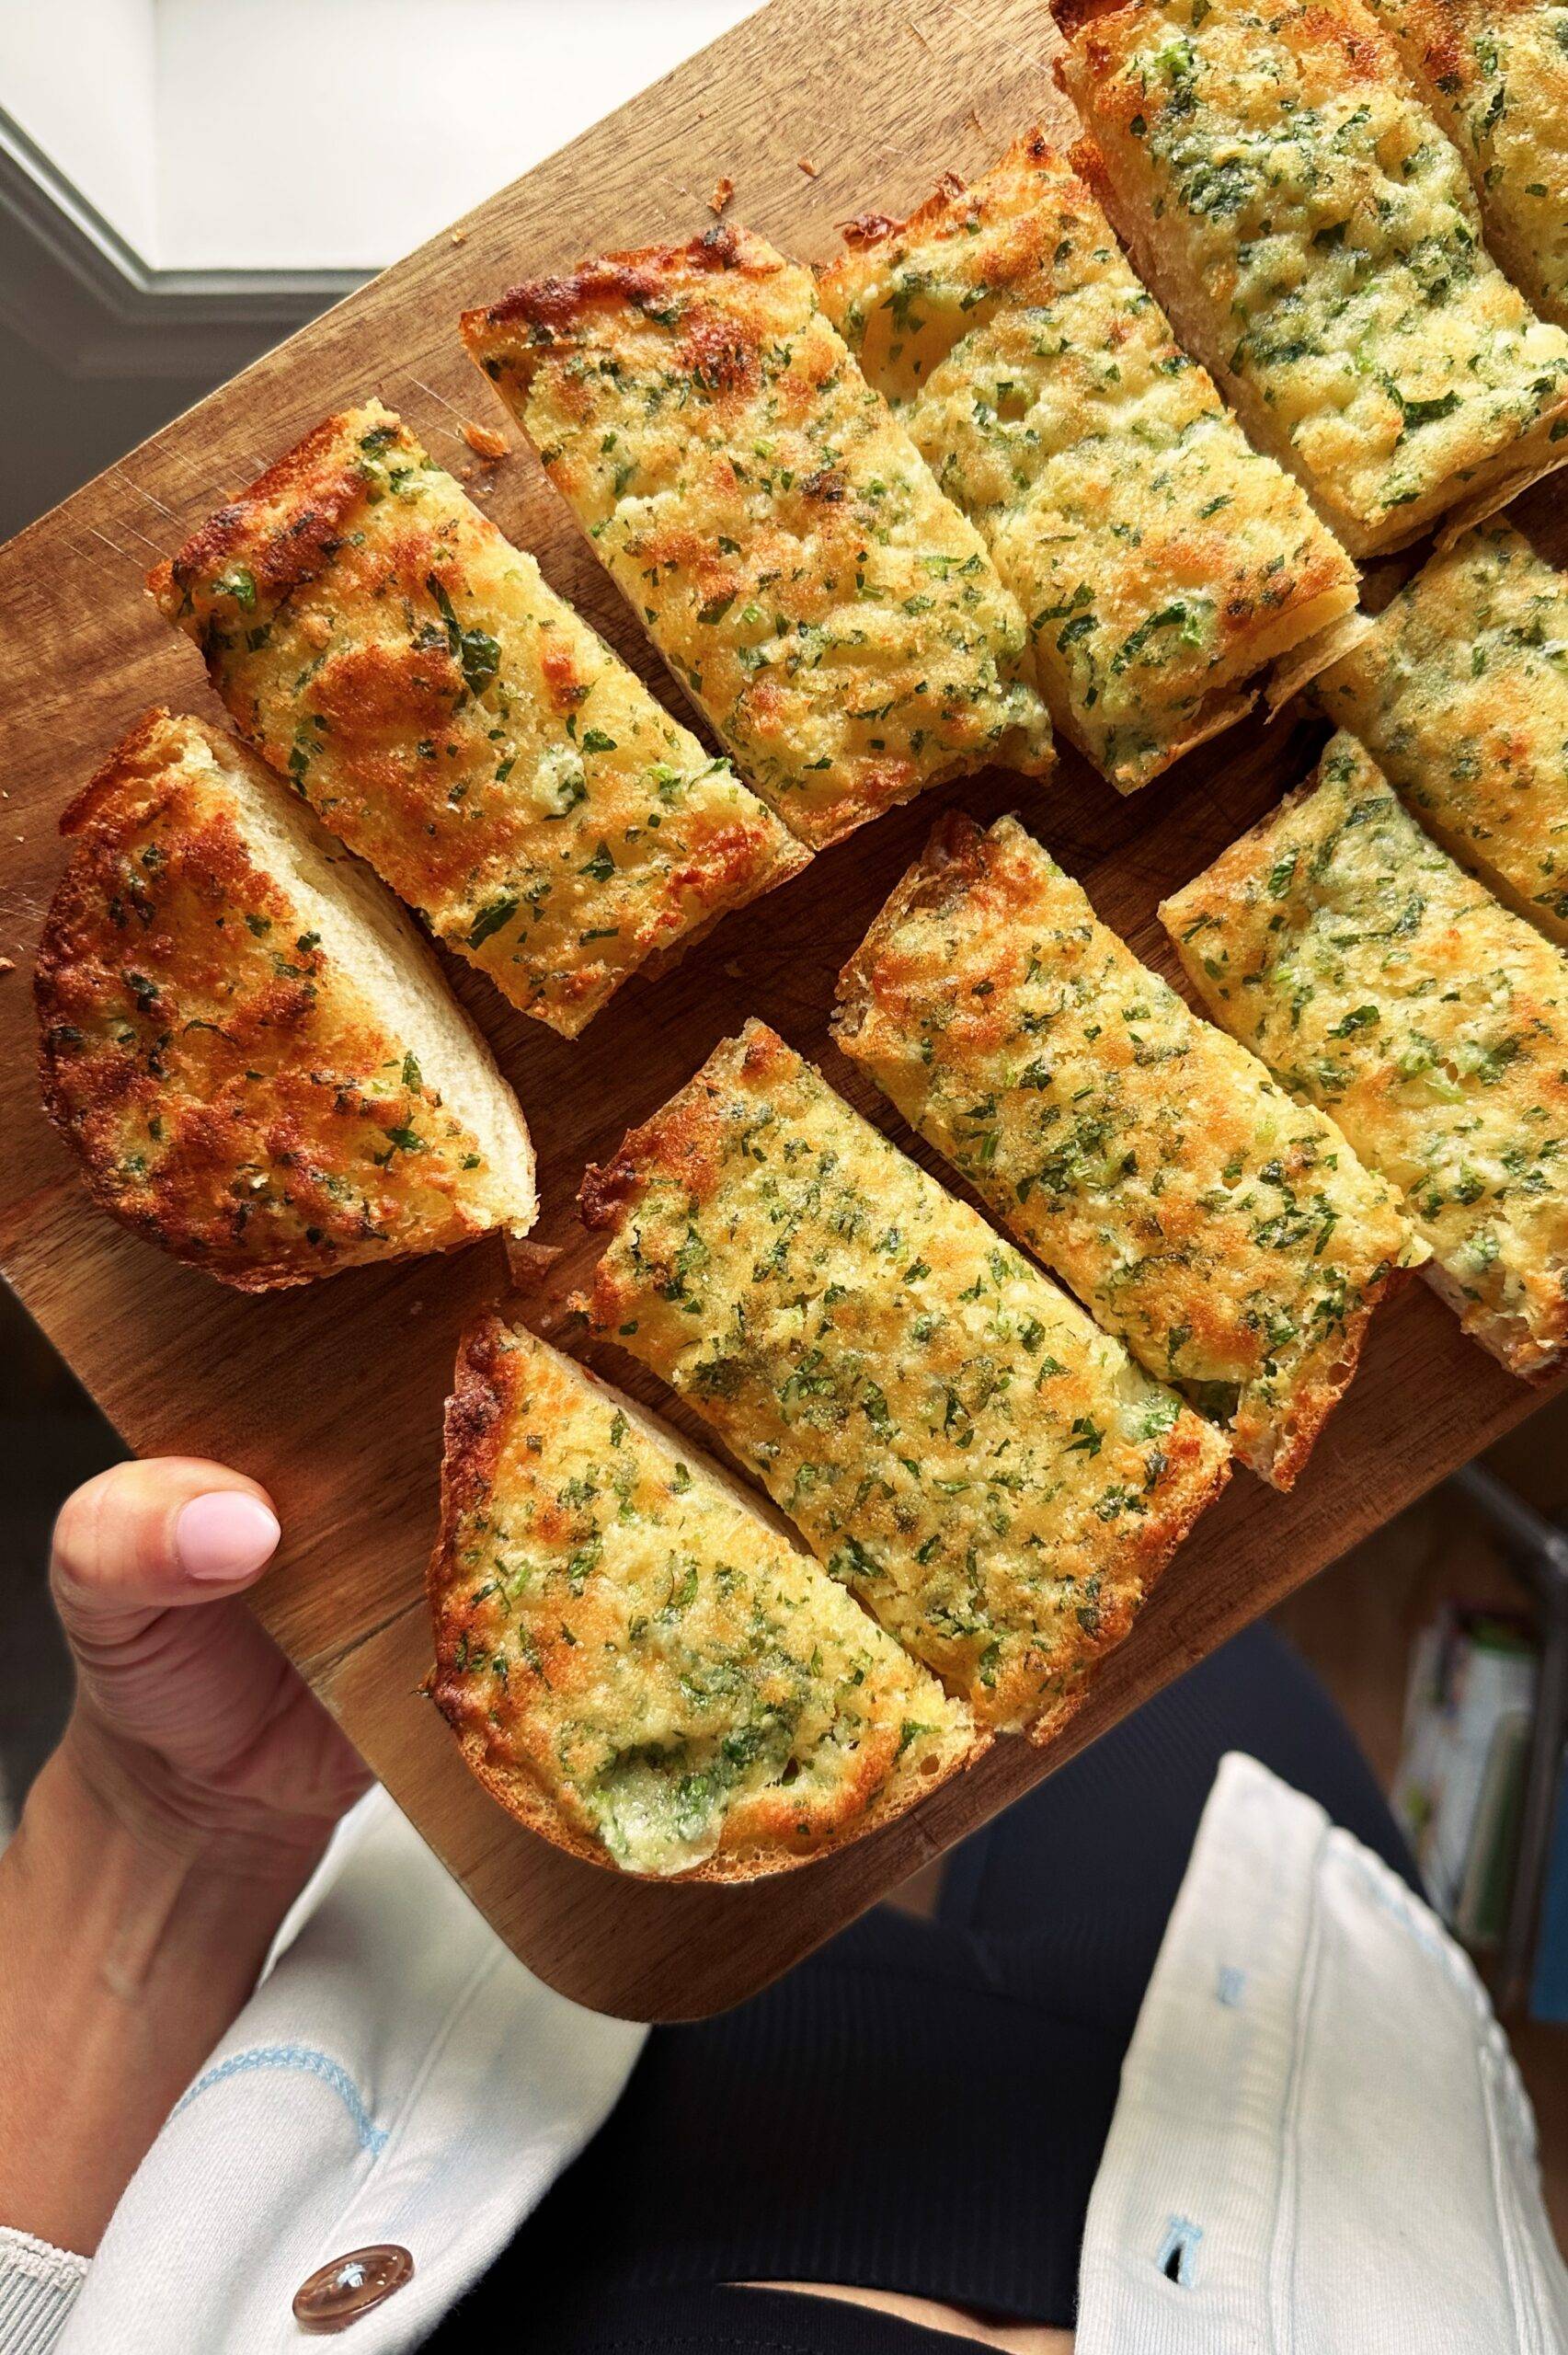 Slices of garlic bread on a cutting board.